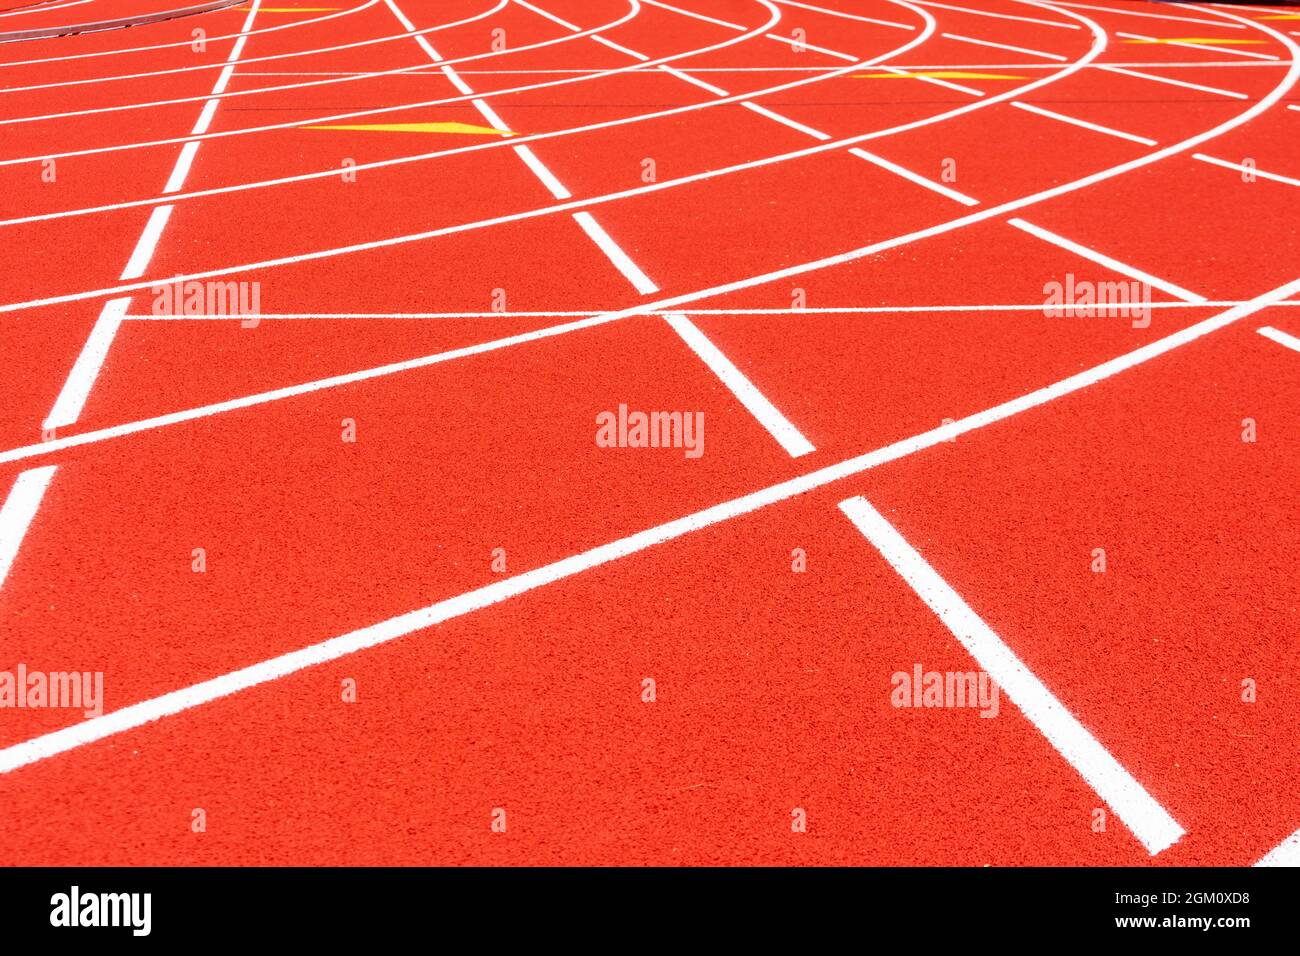 Allwetter-Laufstrecke. Weiße durchgehende Linien kreuzen sich auf roten Gummirassen, selektiver Fokus. Rennkurve auf Laufbahnoberfläche. Stockfoto